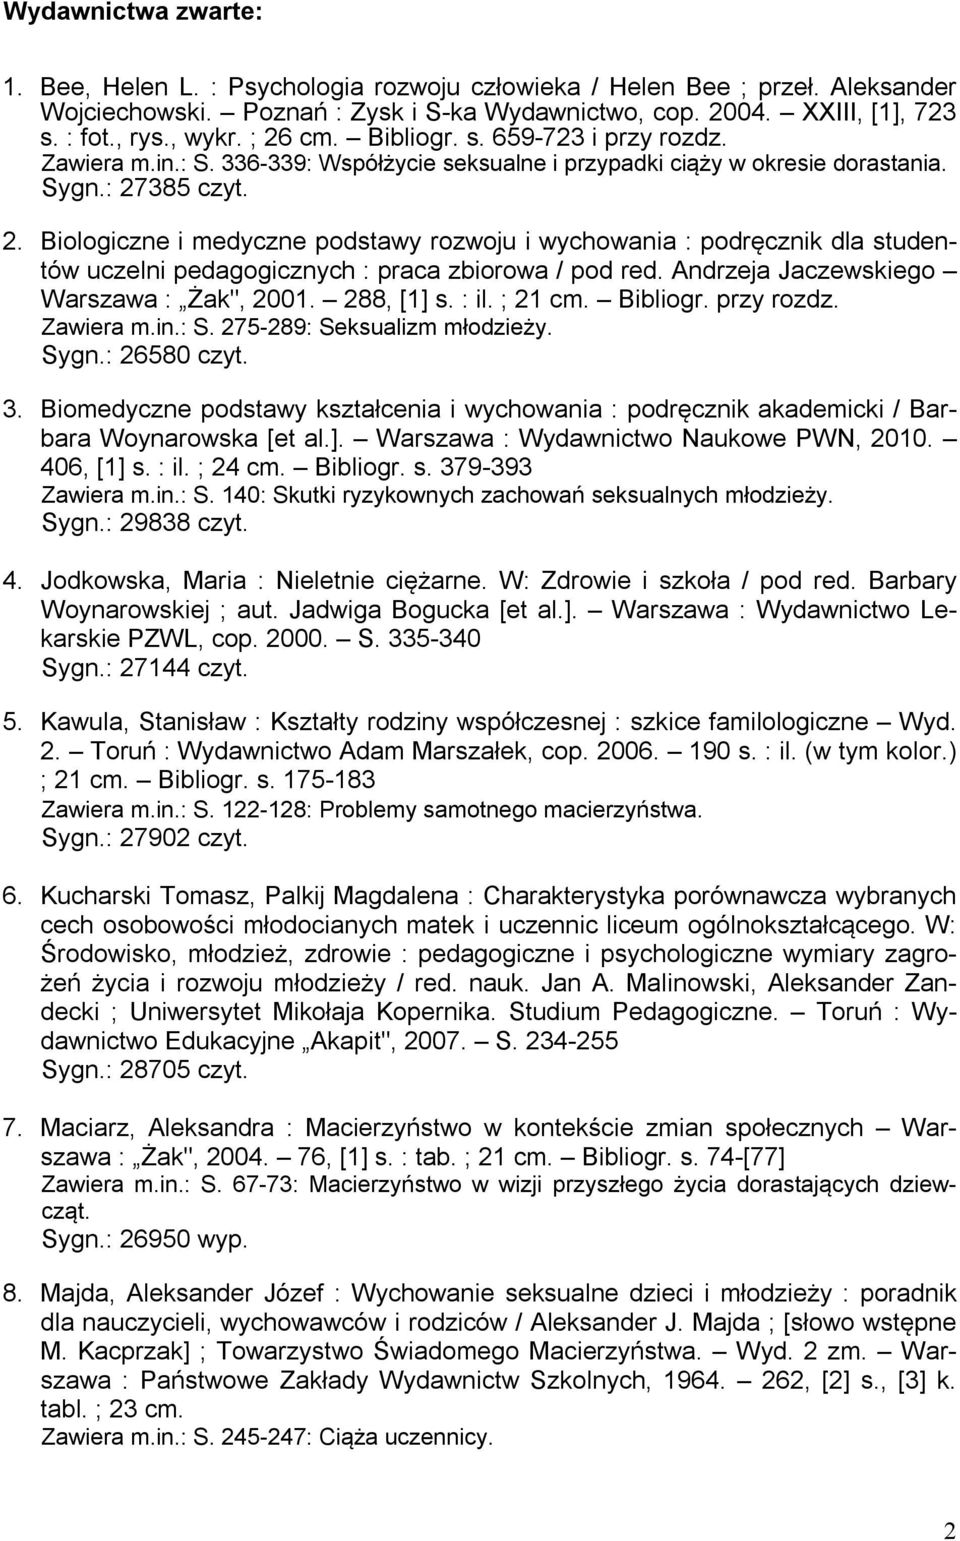 Andrzeja Jaczewskiego Warszawa : Żak", 2001. 288, [1] s. : il. ; 21 cm. Bibliogr. przy rozdz. Zawiera m.in.: S. 275-289: Seksualizm młodzieży. Sygn.: 26580 czyt. 3.